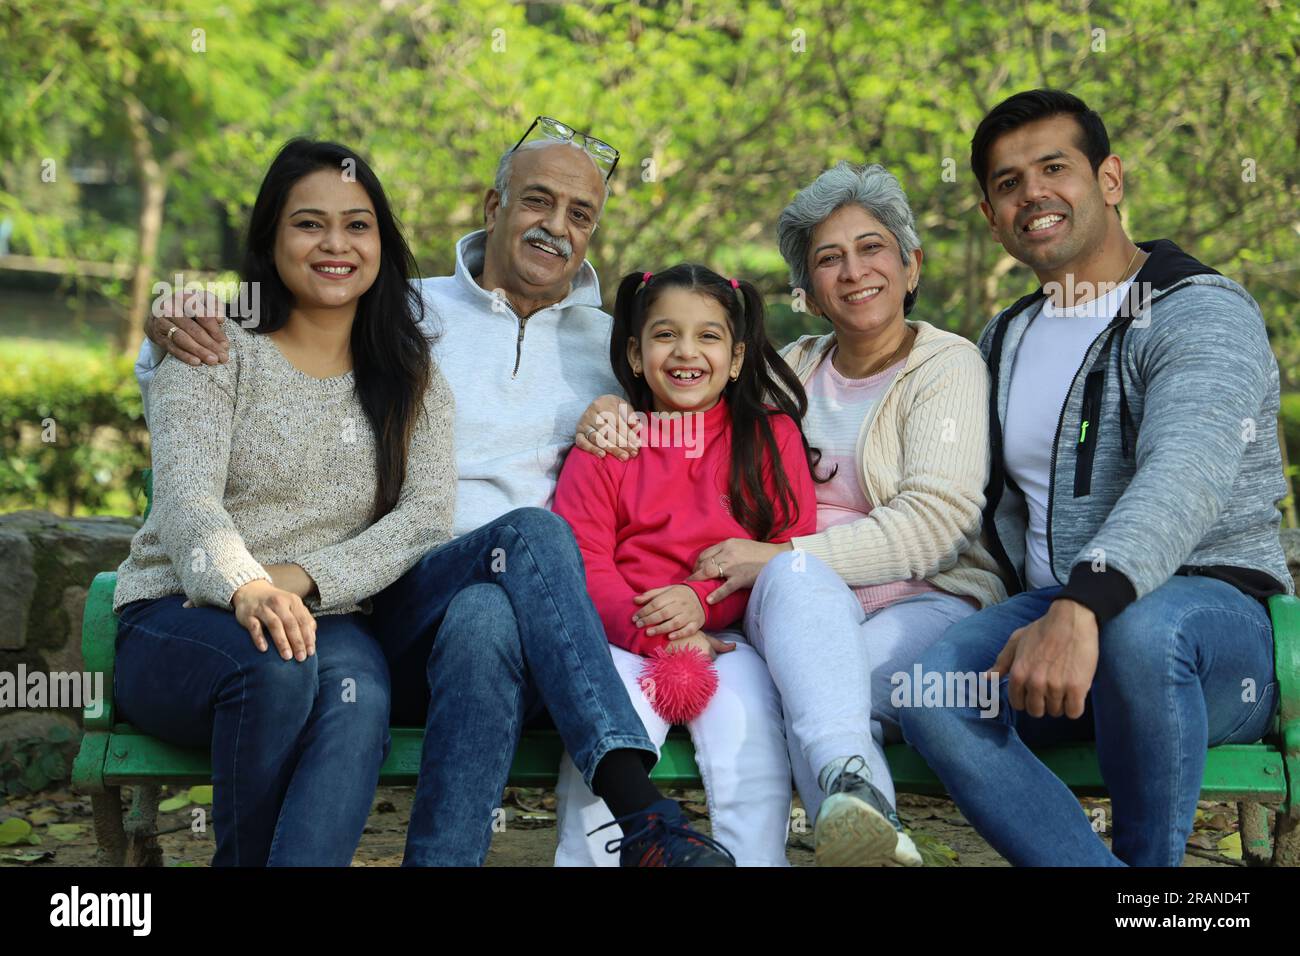 Glückliche Familie, die eine gute und fröhliche Zeit hat, auf einer Bank im grünen Park inmitten einer ruhigen Atmosphäre und einer frischen Luft-Umgebung zu sitzen. Kein Verschmutzungstag. Stockfoto